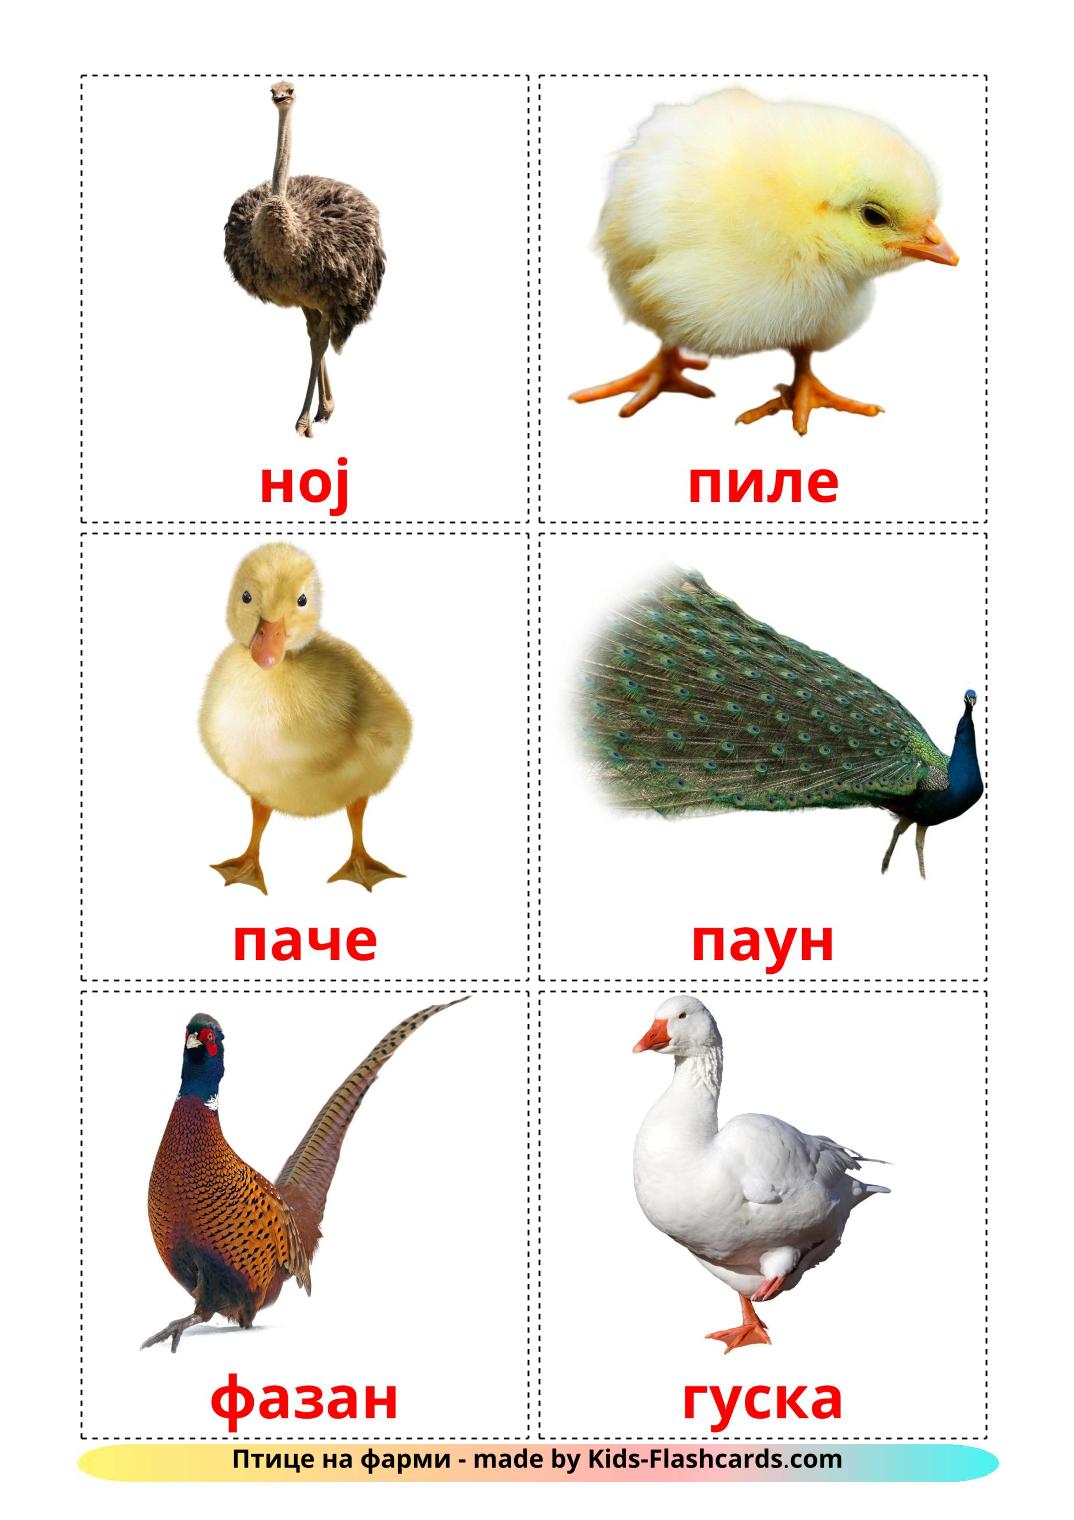 Farm birds - 11 Free Printable serbian(cyrillic) Flashcards 